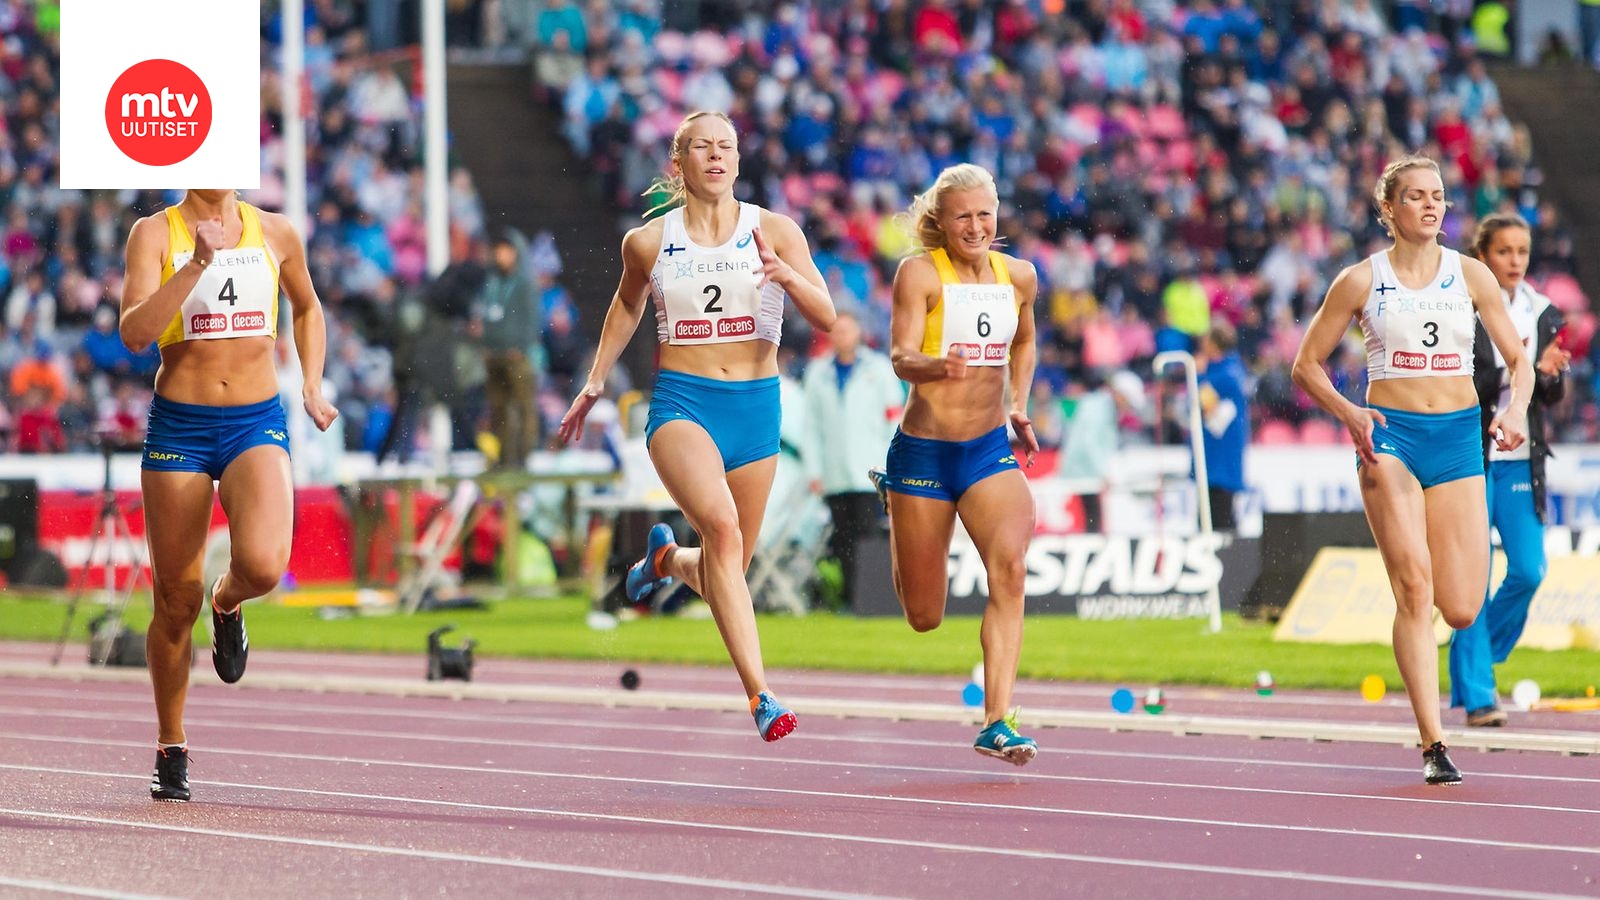 Suomi–Ruotsi-ottelu järjestetään tiukoin turvaohjein –  ruotsalaisurheilijoille tarkat vaatimukset 